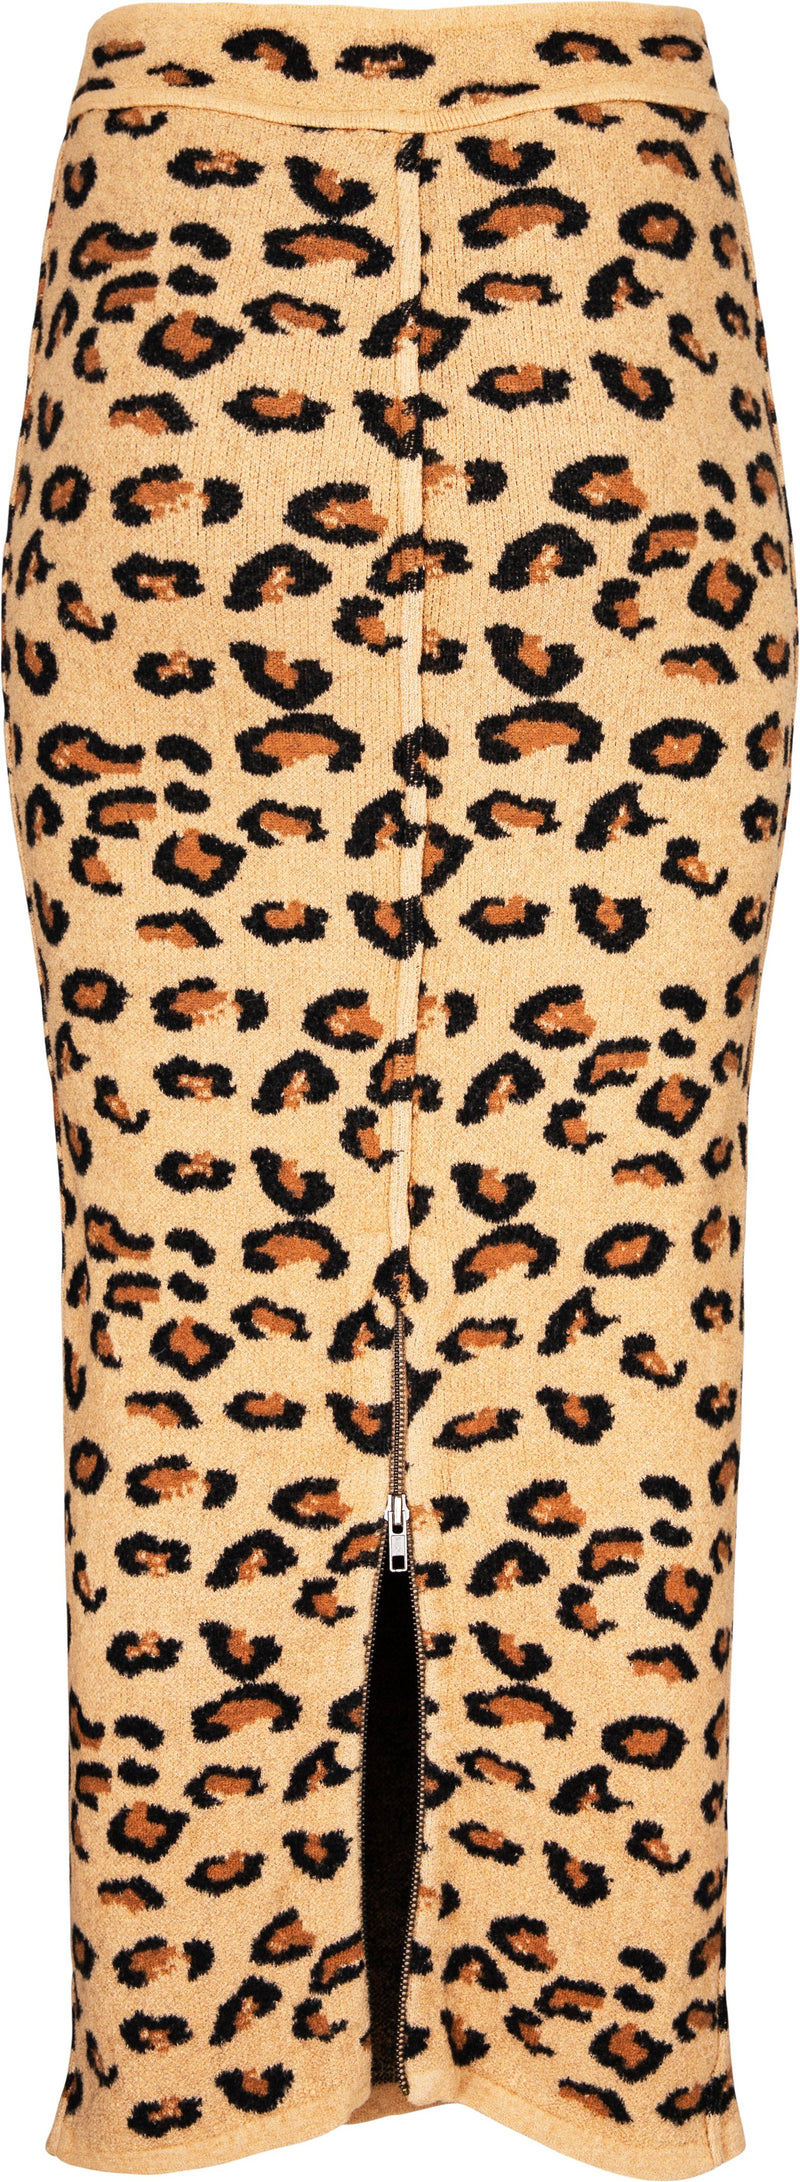 Alaïa Fall 1991 Runway Leopard Knit Pencil Skirt